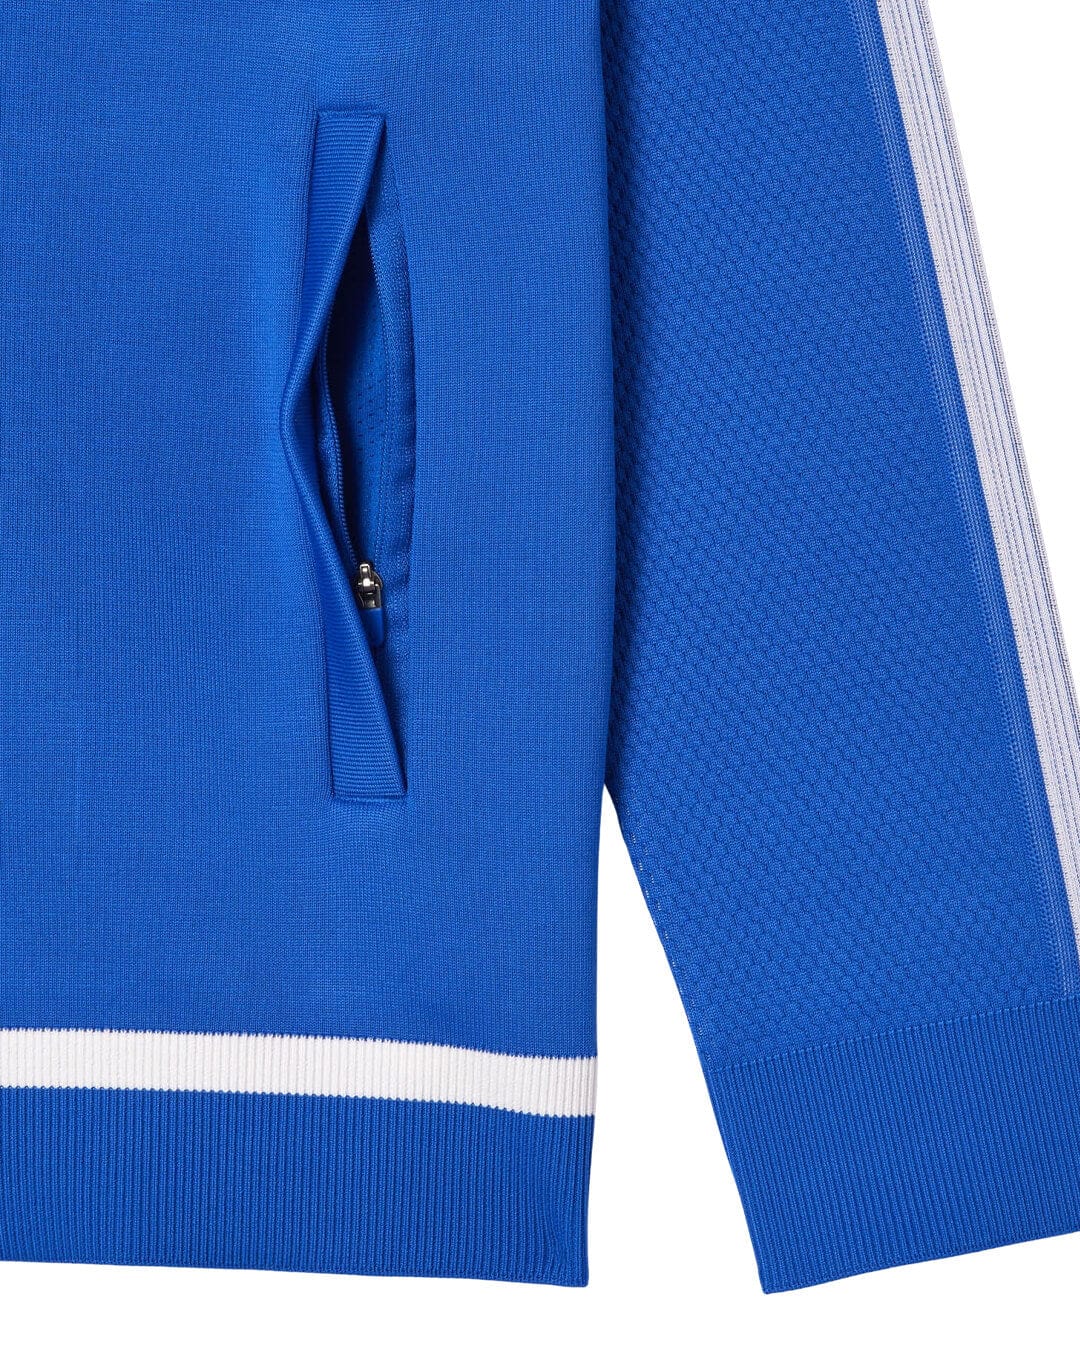 Lacoste Jumpers Lacoste Blue Tennis x Novak Djokovic Sportsuit Jacket